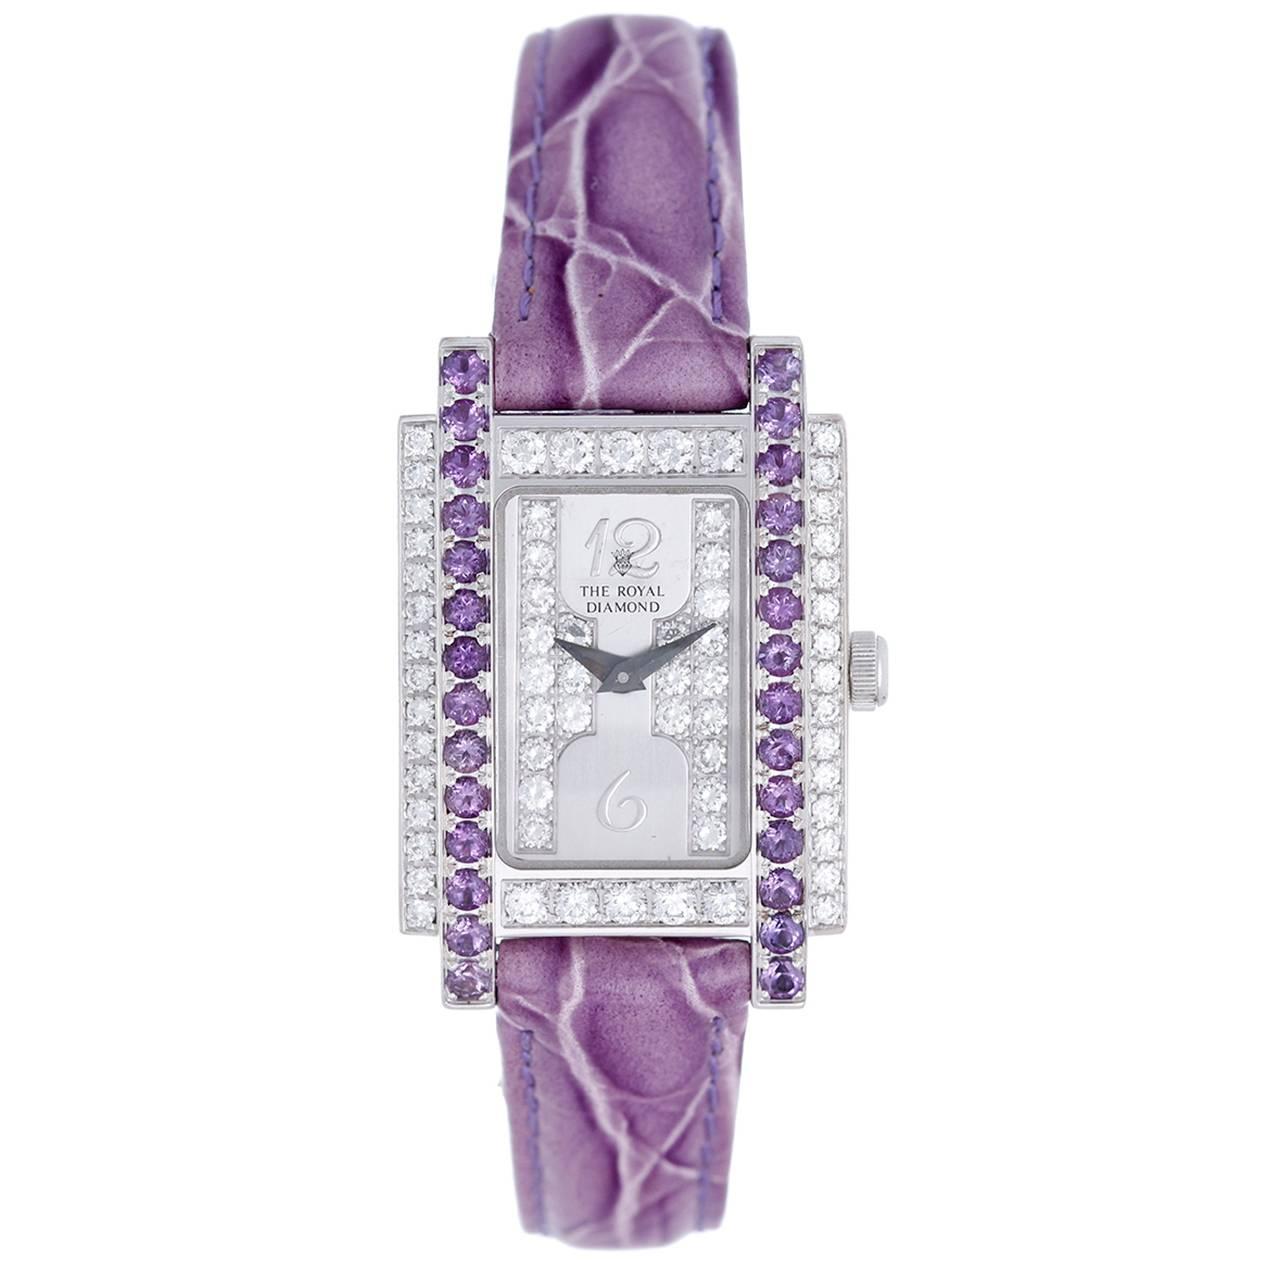 Chatila Lady's White Gold Diamond "The Royal Diamond Fancy" Quartz Wristwatch 